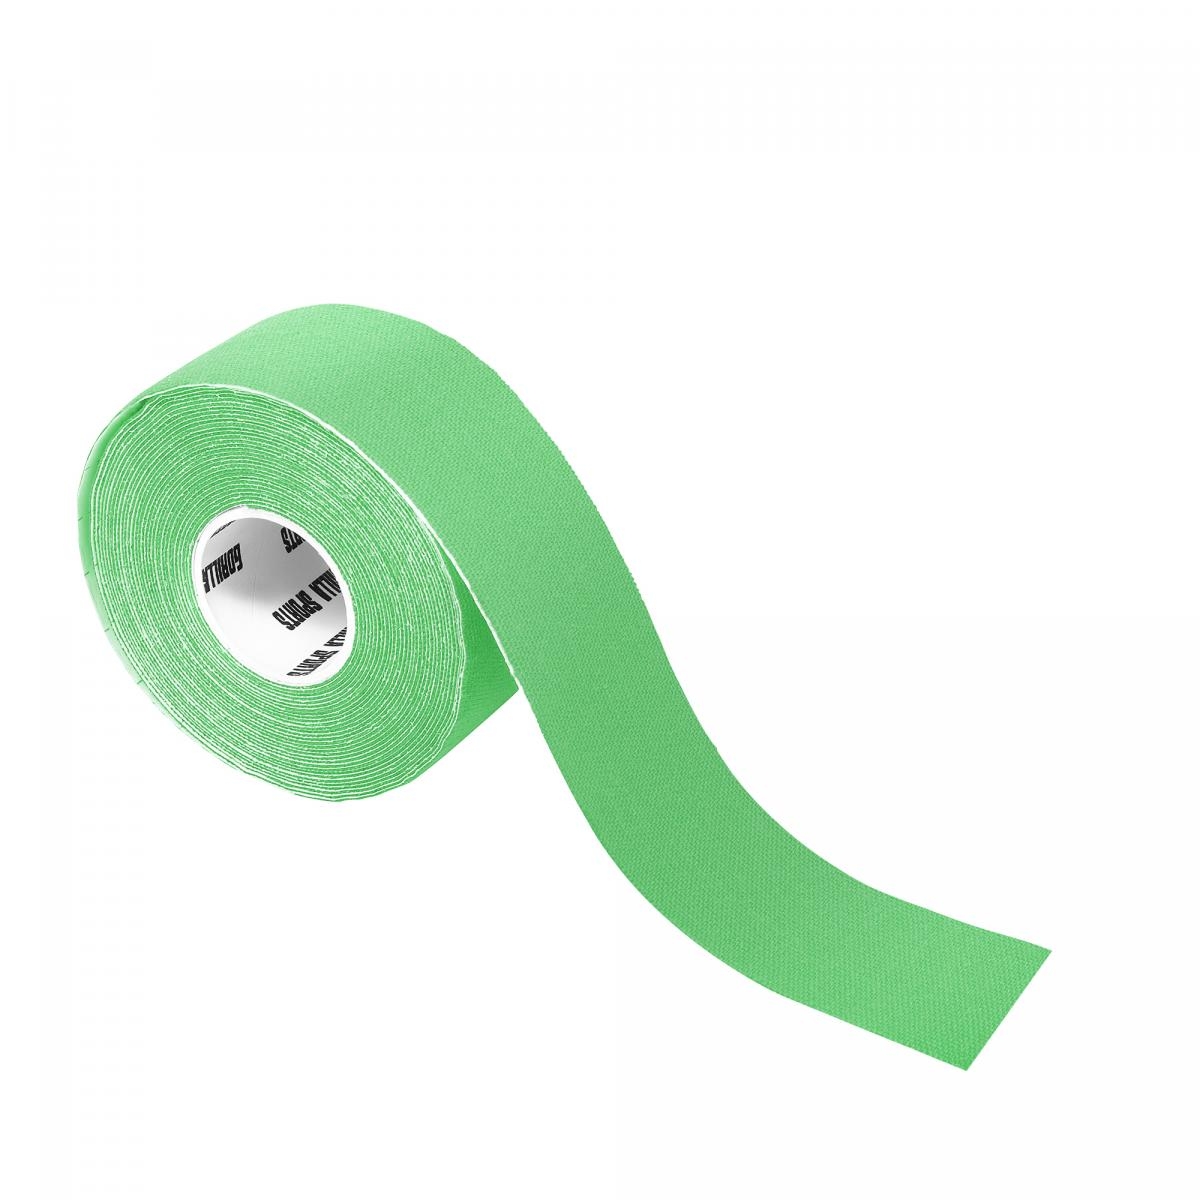 Bande de kinÃ©siologie couleur verte claire - rouleau de 5 m - Largeur : 2,5 cm